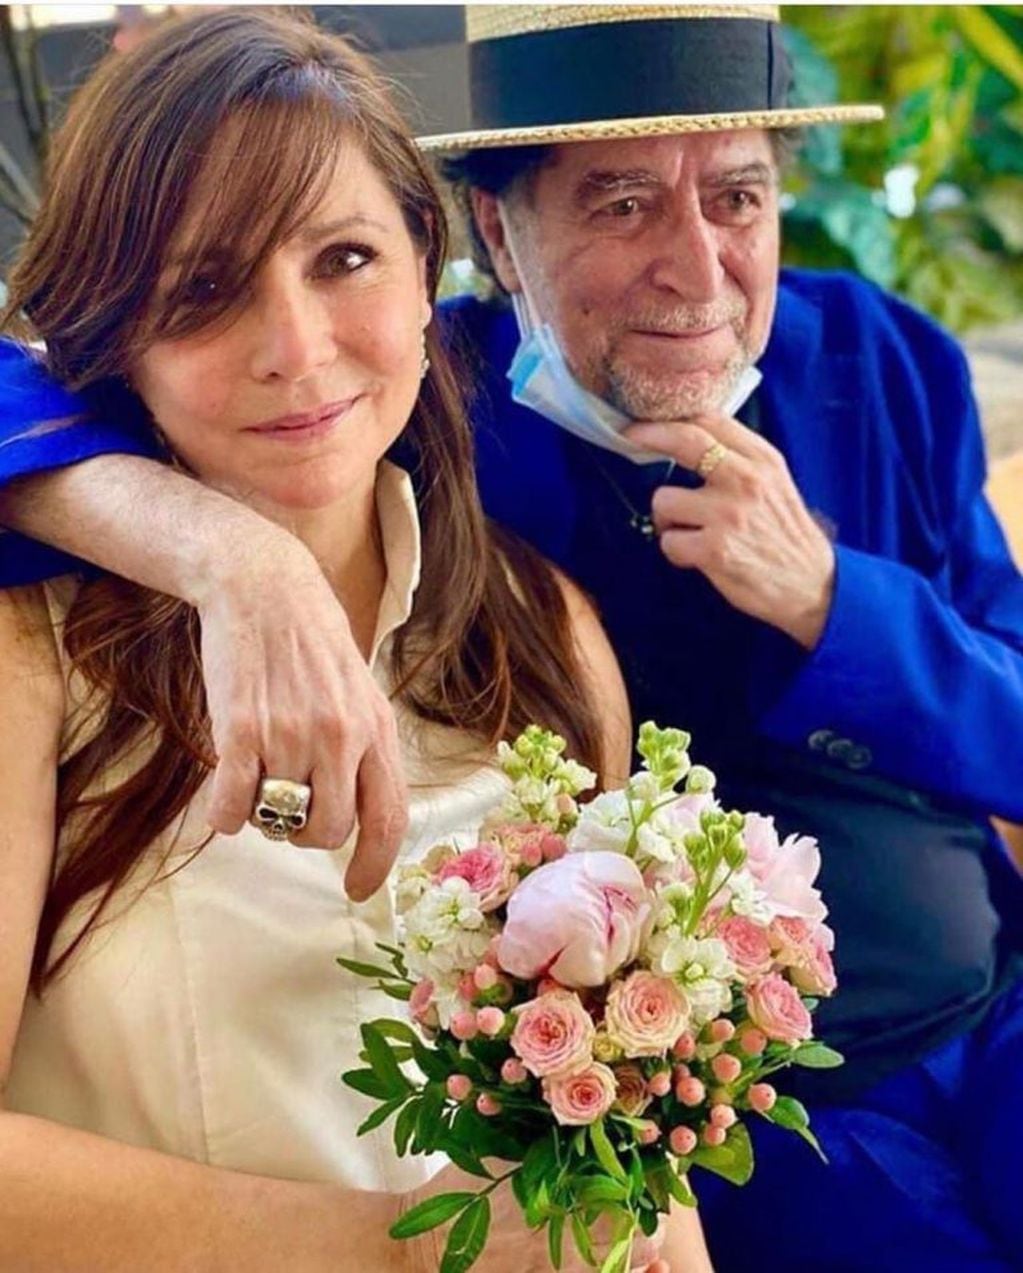 Casamiento de Joaquin Sabina y Jimena Coronado (Instagram/@joaquinsabina)